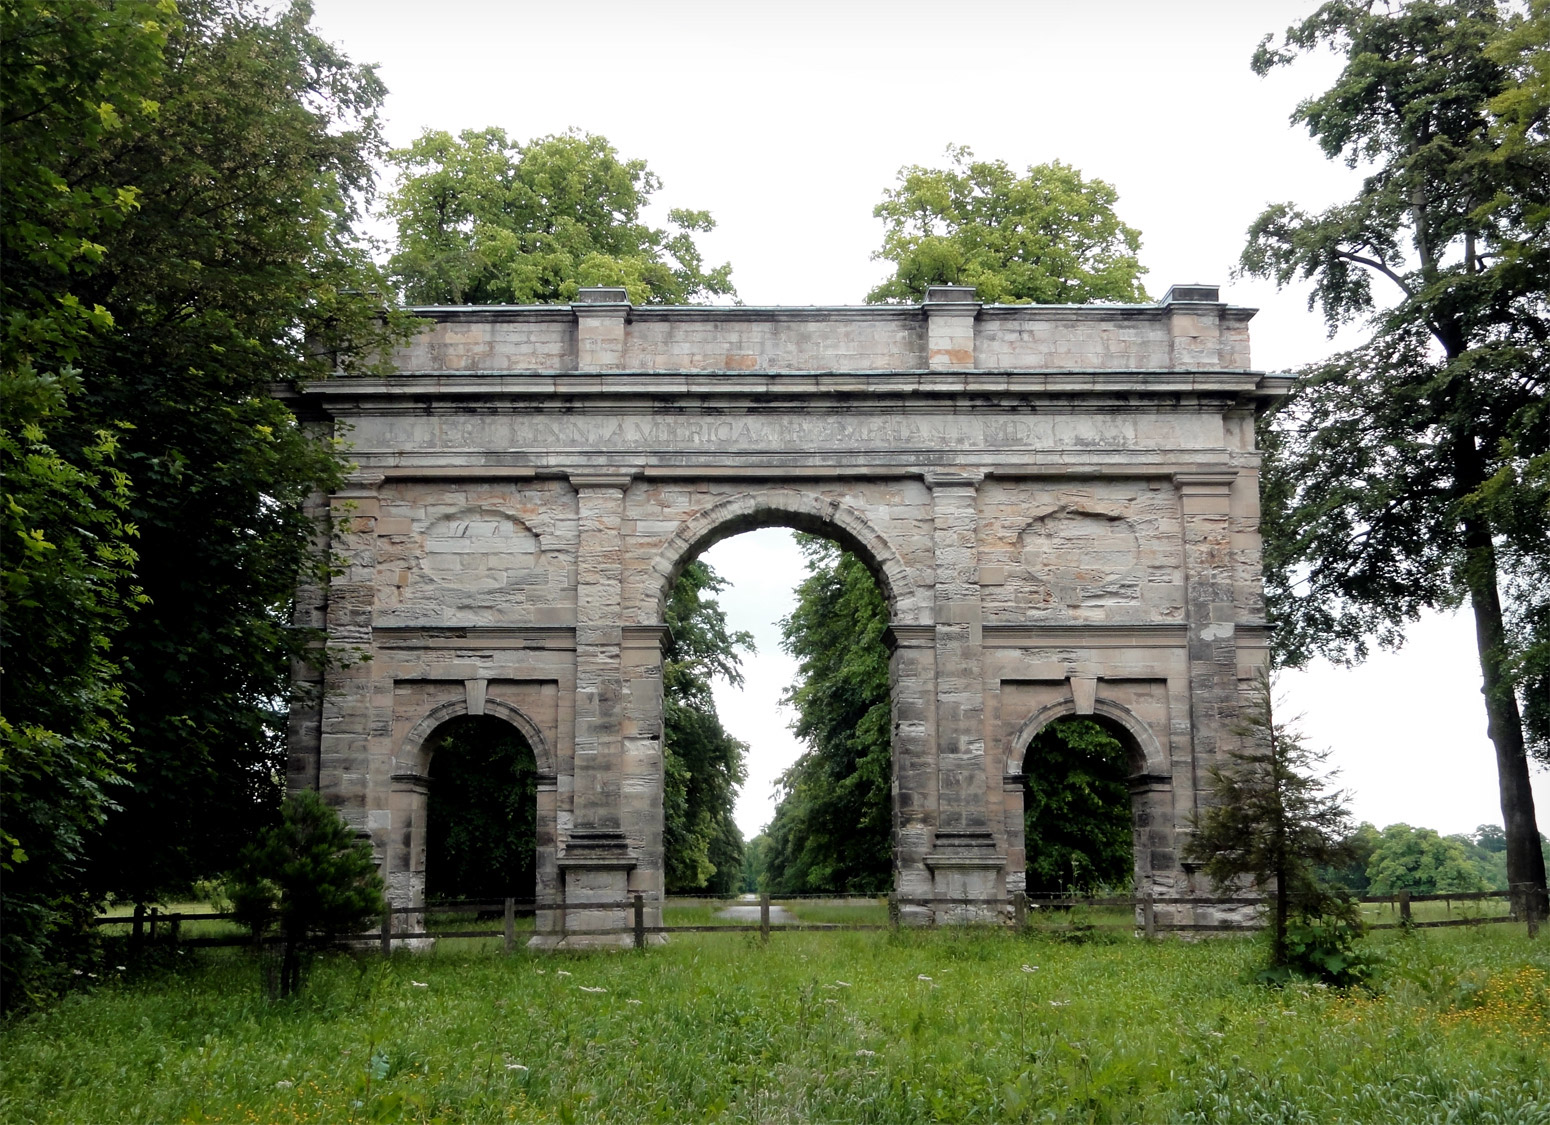 Triumphal Arch at the Parlington Estate